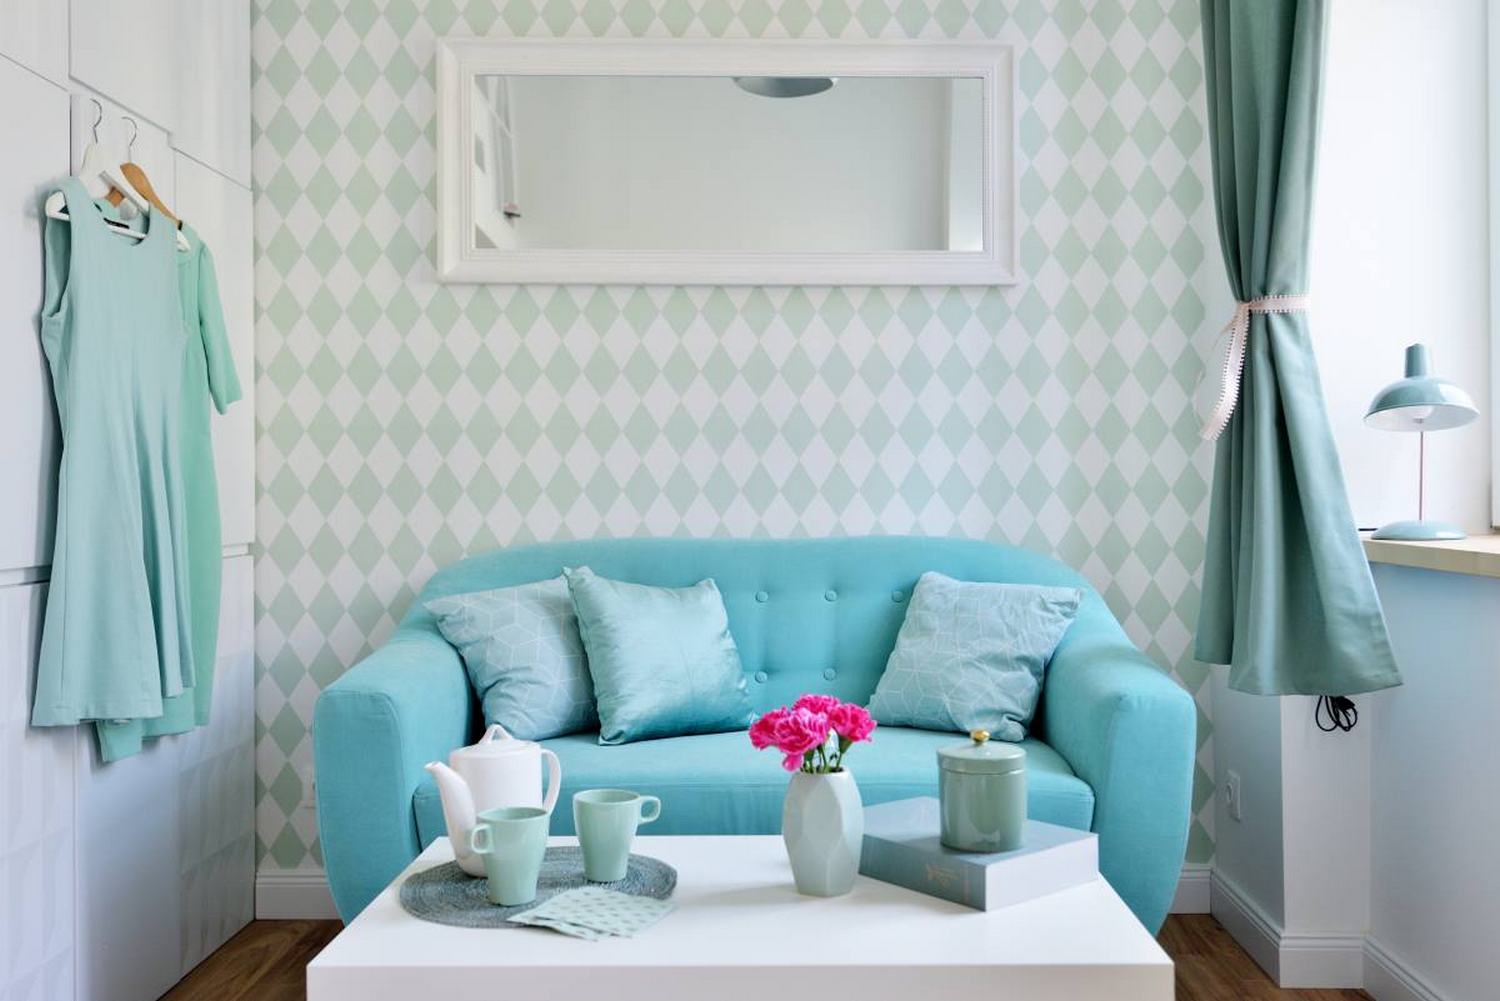 Phòng khách với chiếc ghế sofa màu ngọc lam êm ái, đằng sau bức tường là tấm gương dài hình chữ nhật để “nhân đôi” căn phòng bằng thị giác. Trên chiếc bàn nước màu trắng, các phụ kiện trang trí được lựa chọn “tone sur tone” xinh đẹp vô cùng.